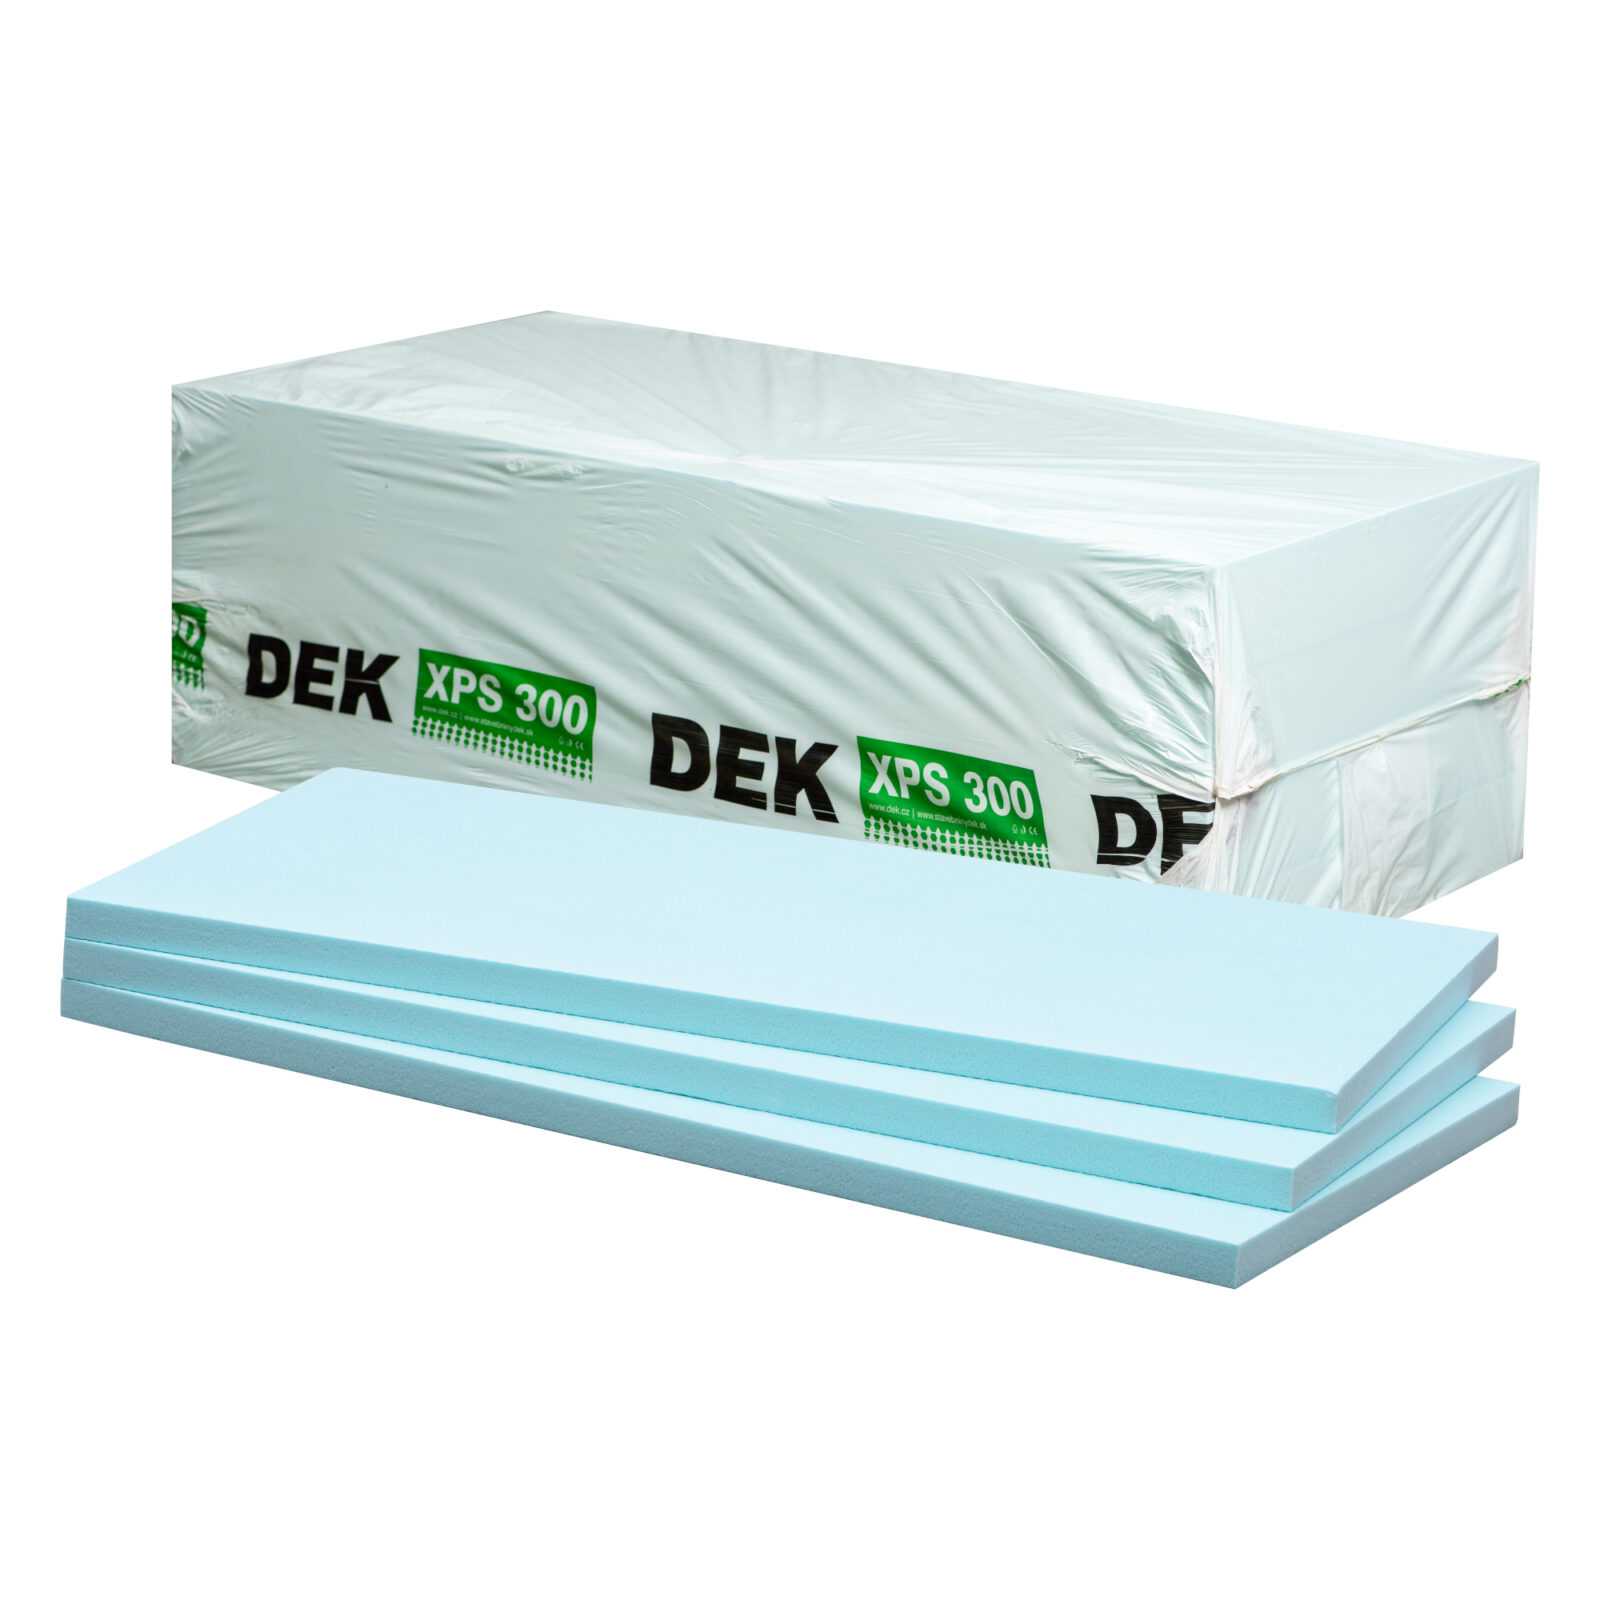 Tepelná izolace DEK XPS I 300 kPa 180 mm (1